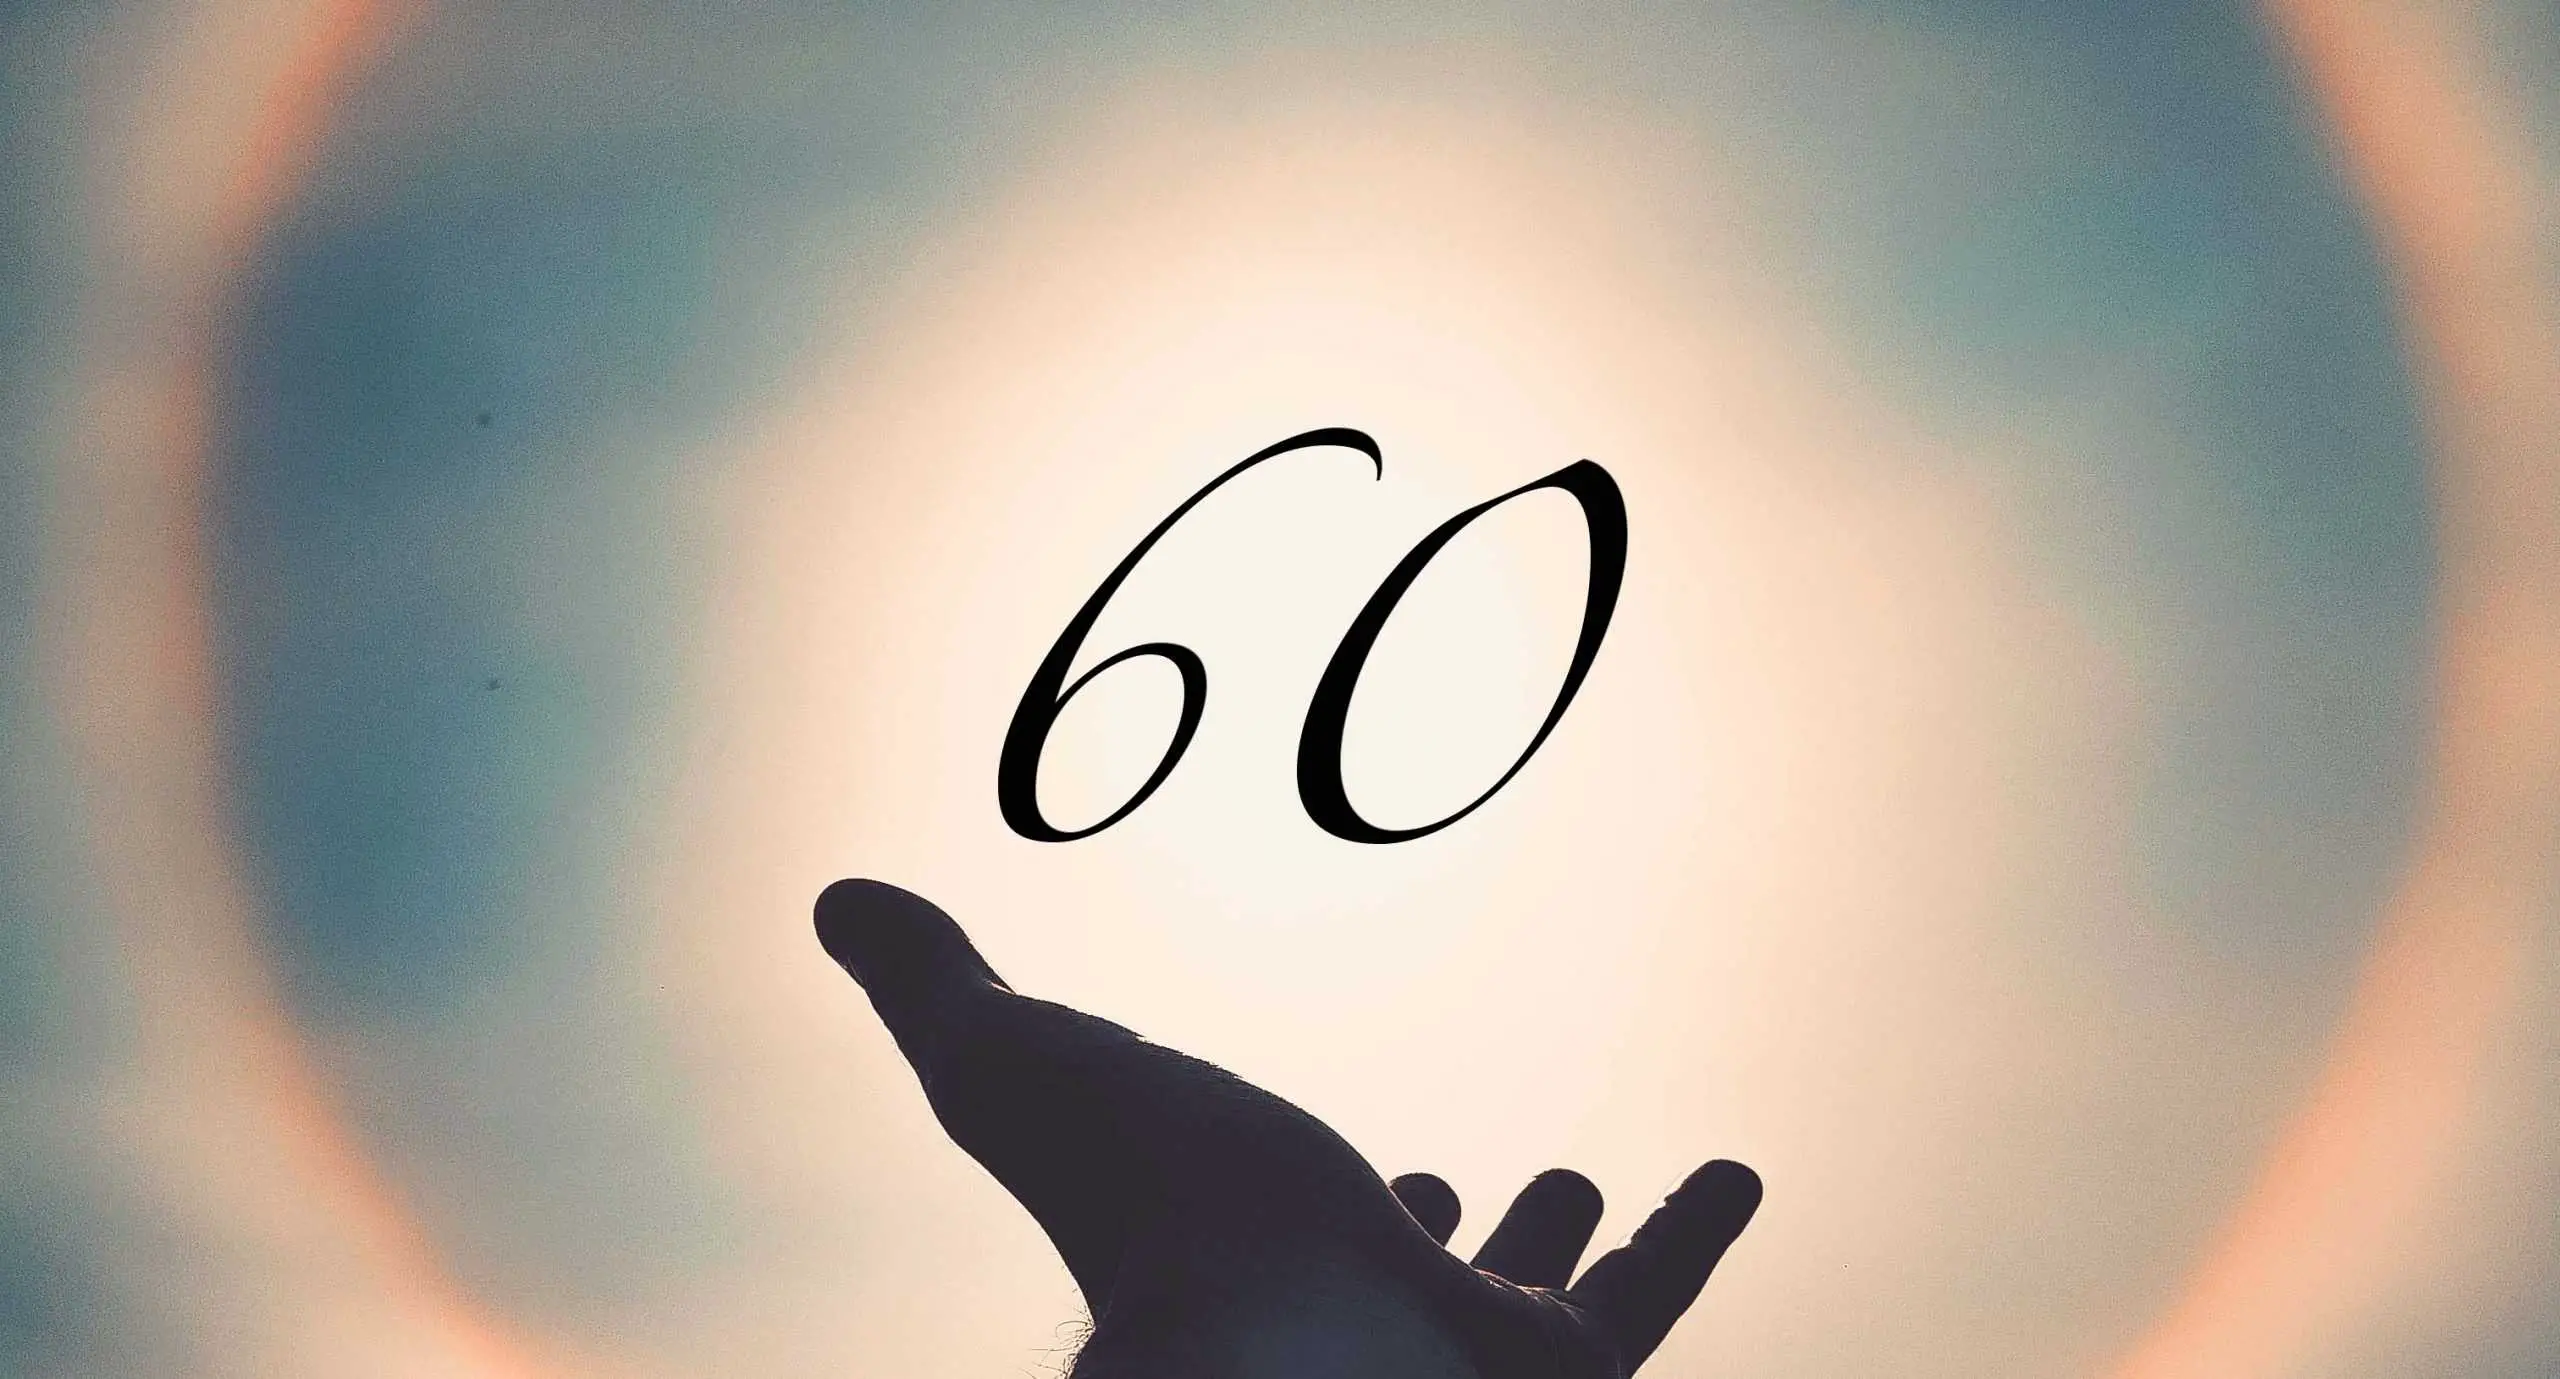 Signification du nombre 60